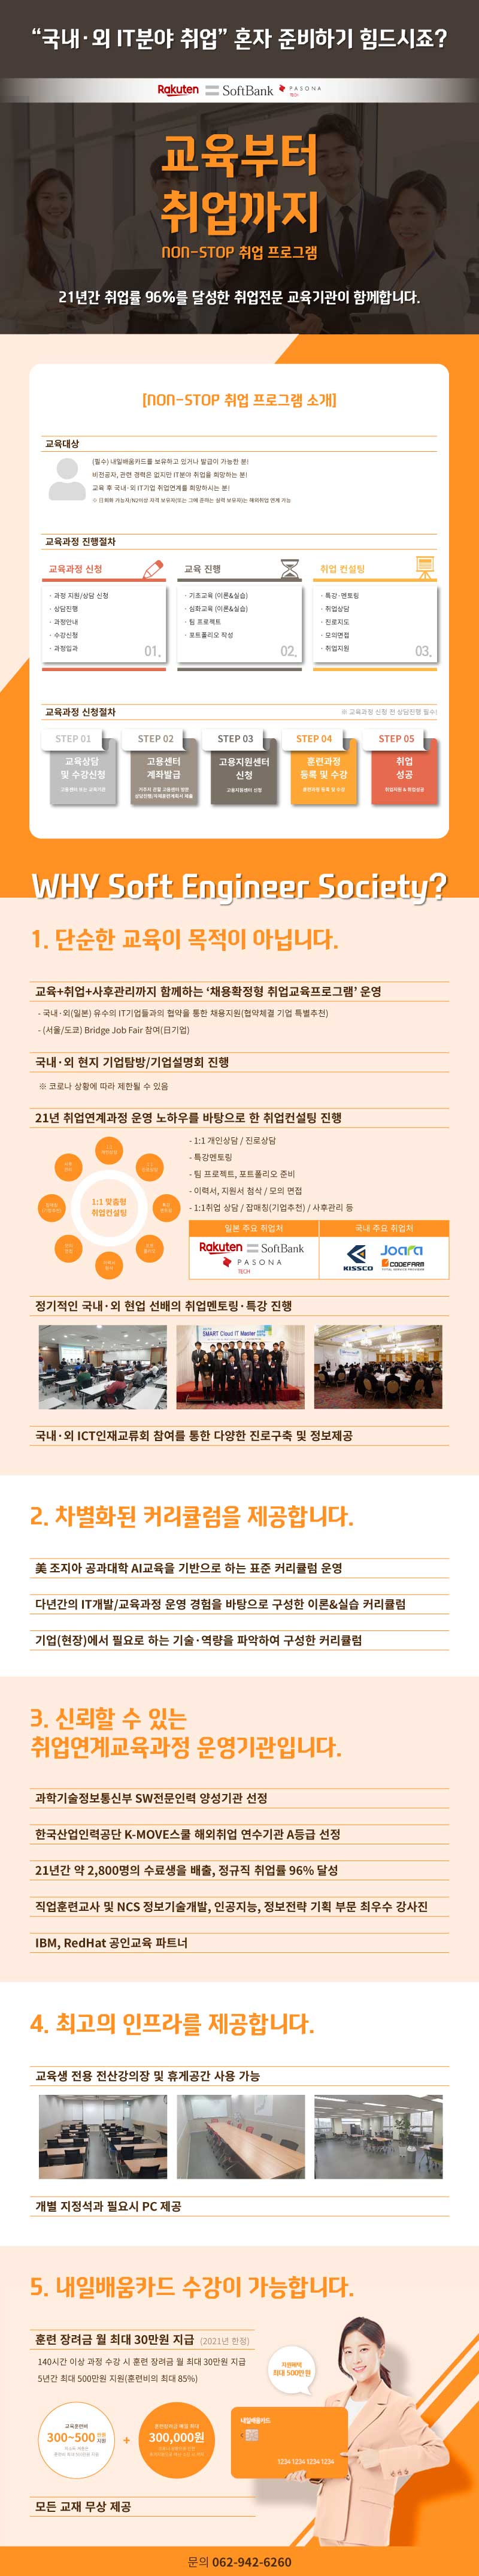 내일배움카드 NON-STOP 취업프로그램 소개